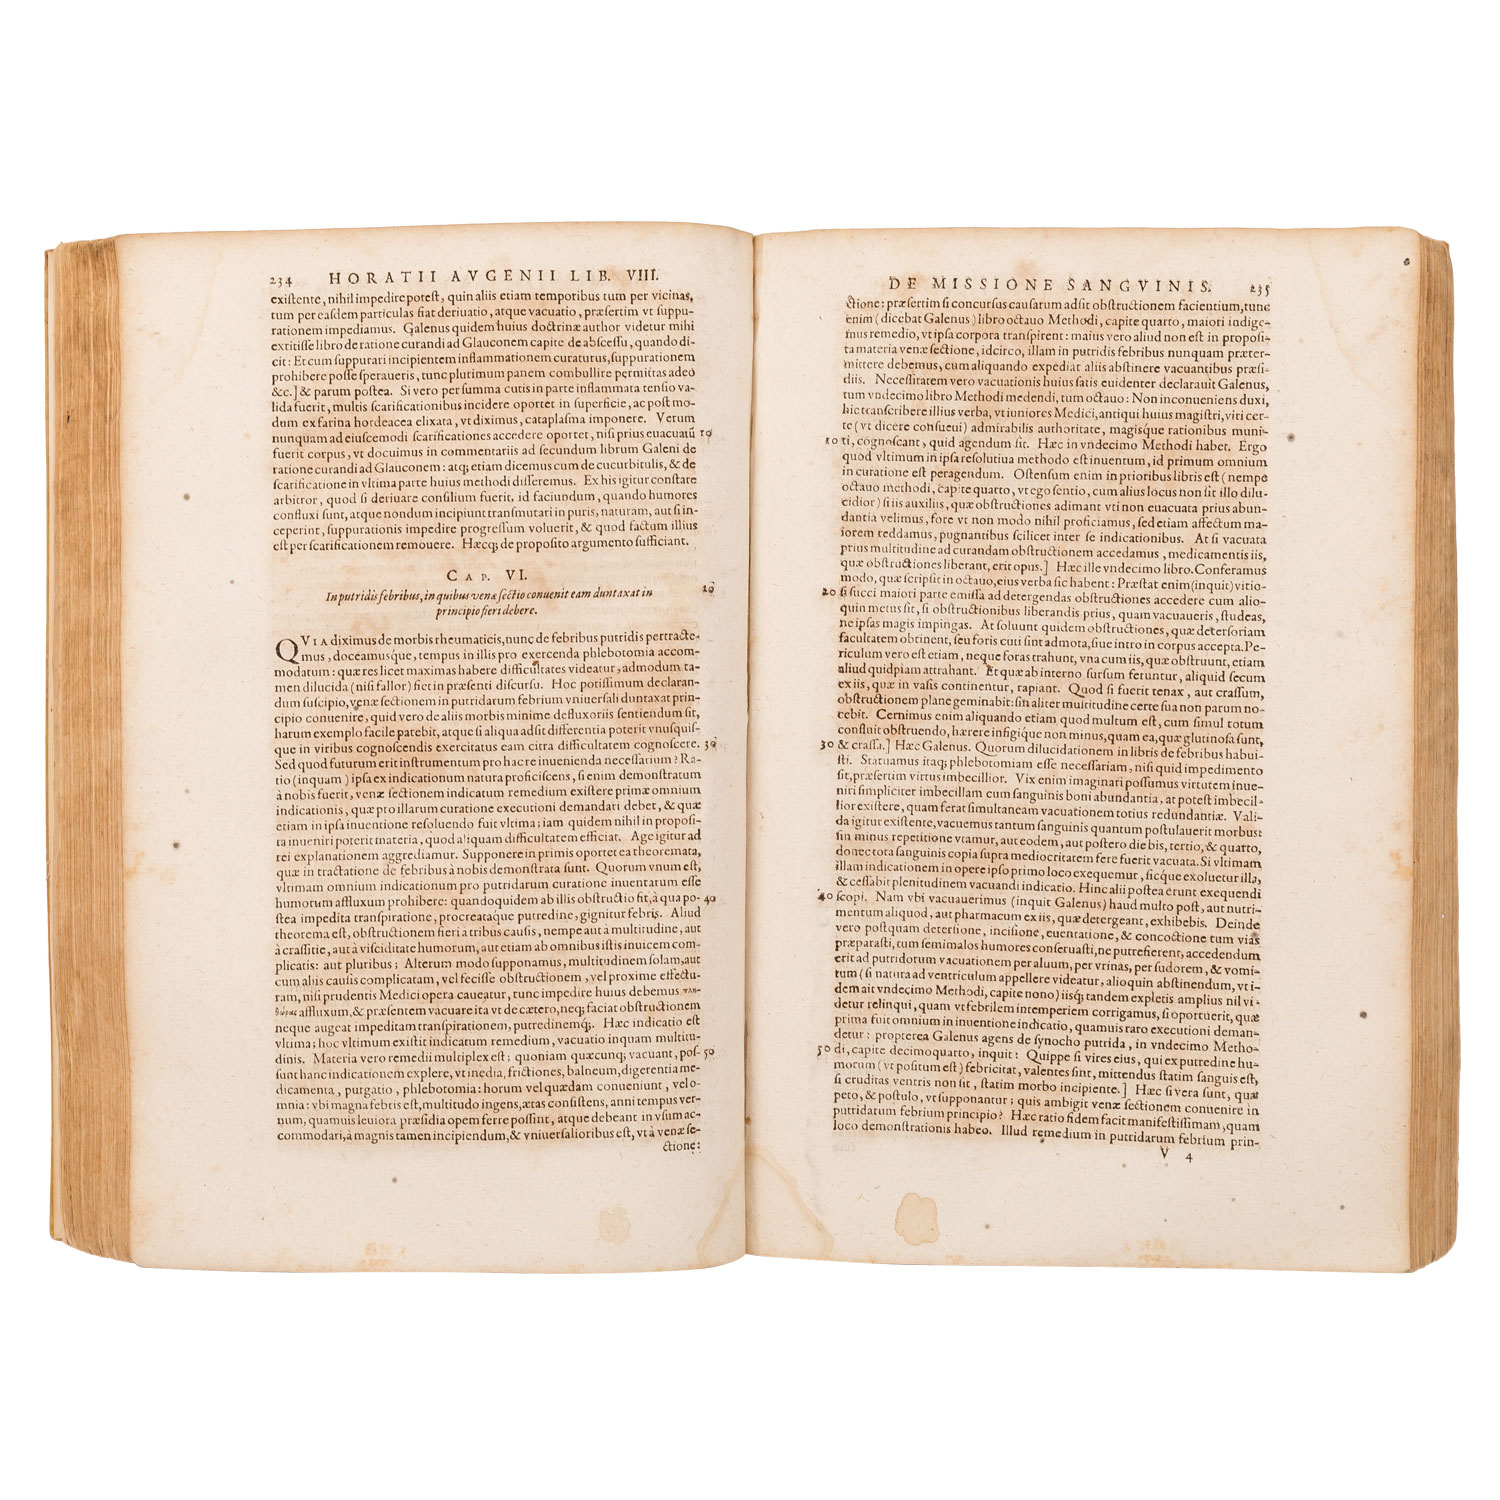 ORAZIO AUGENIO "De ratione curandi per sanguinis missionem libri decem" 1598 - Image 2 of 6